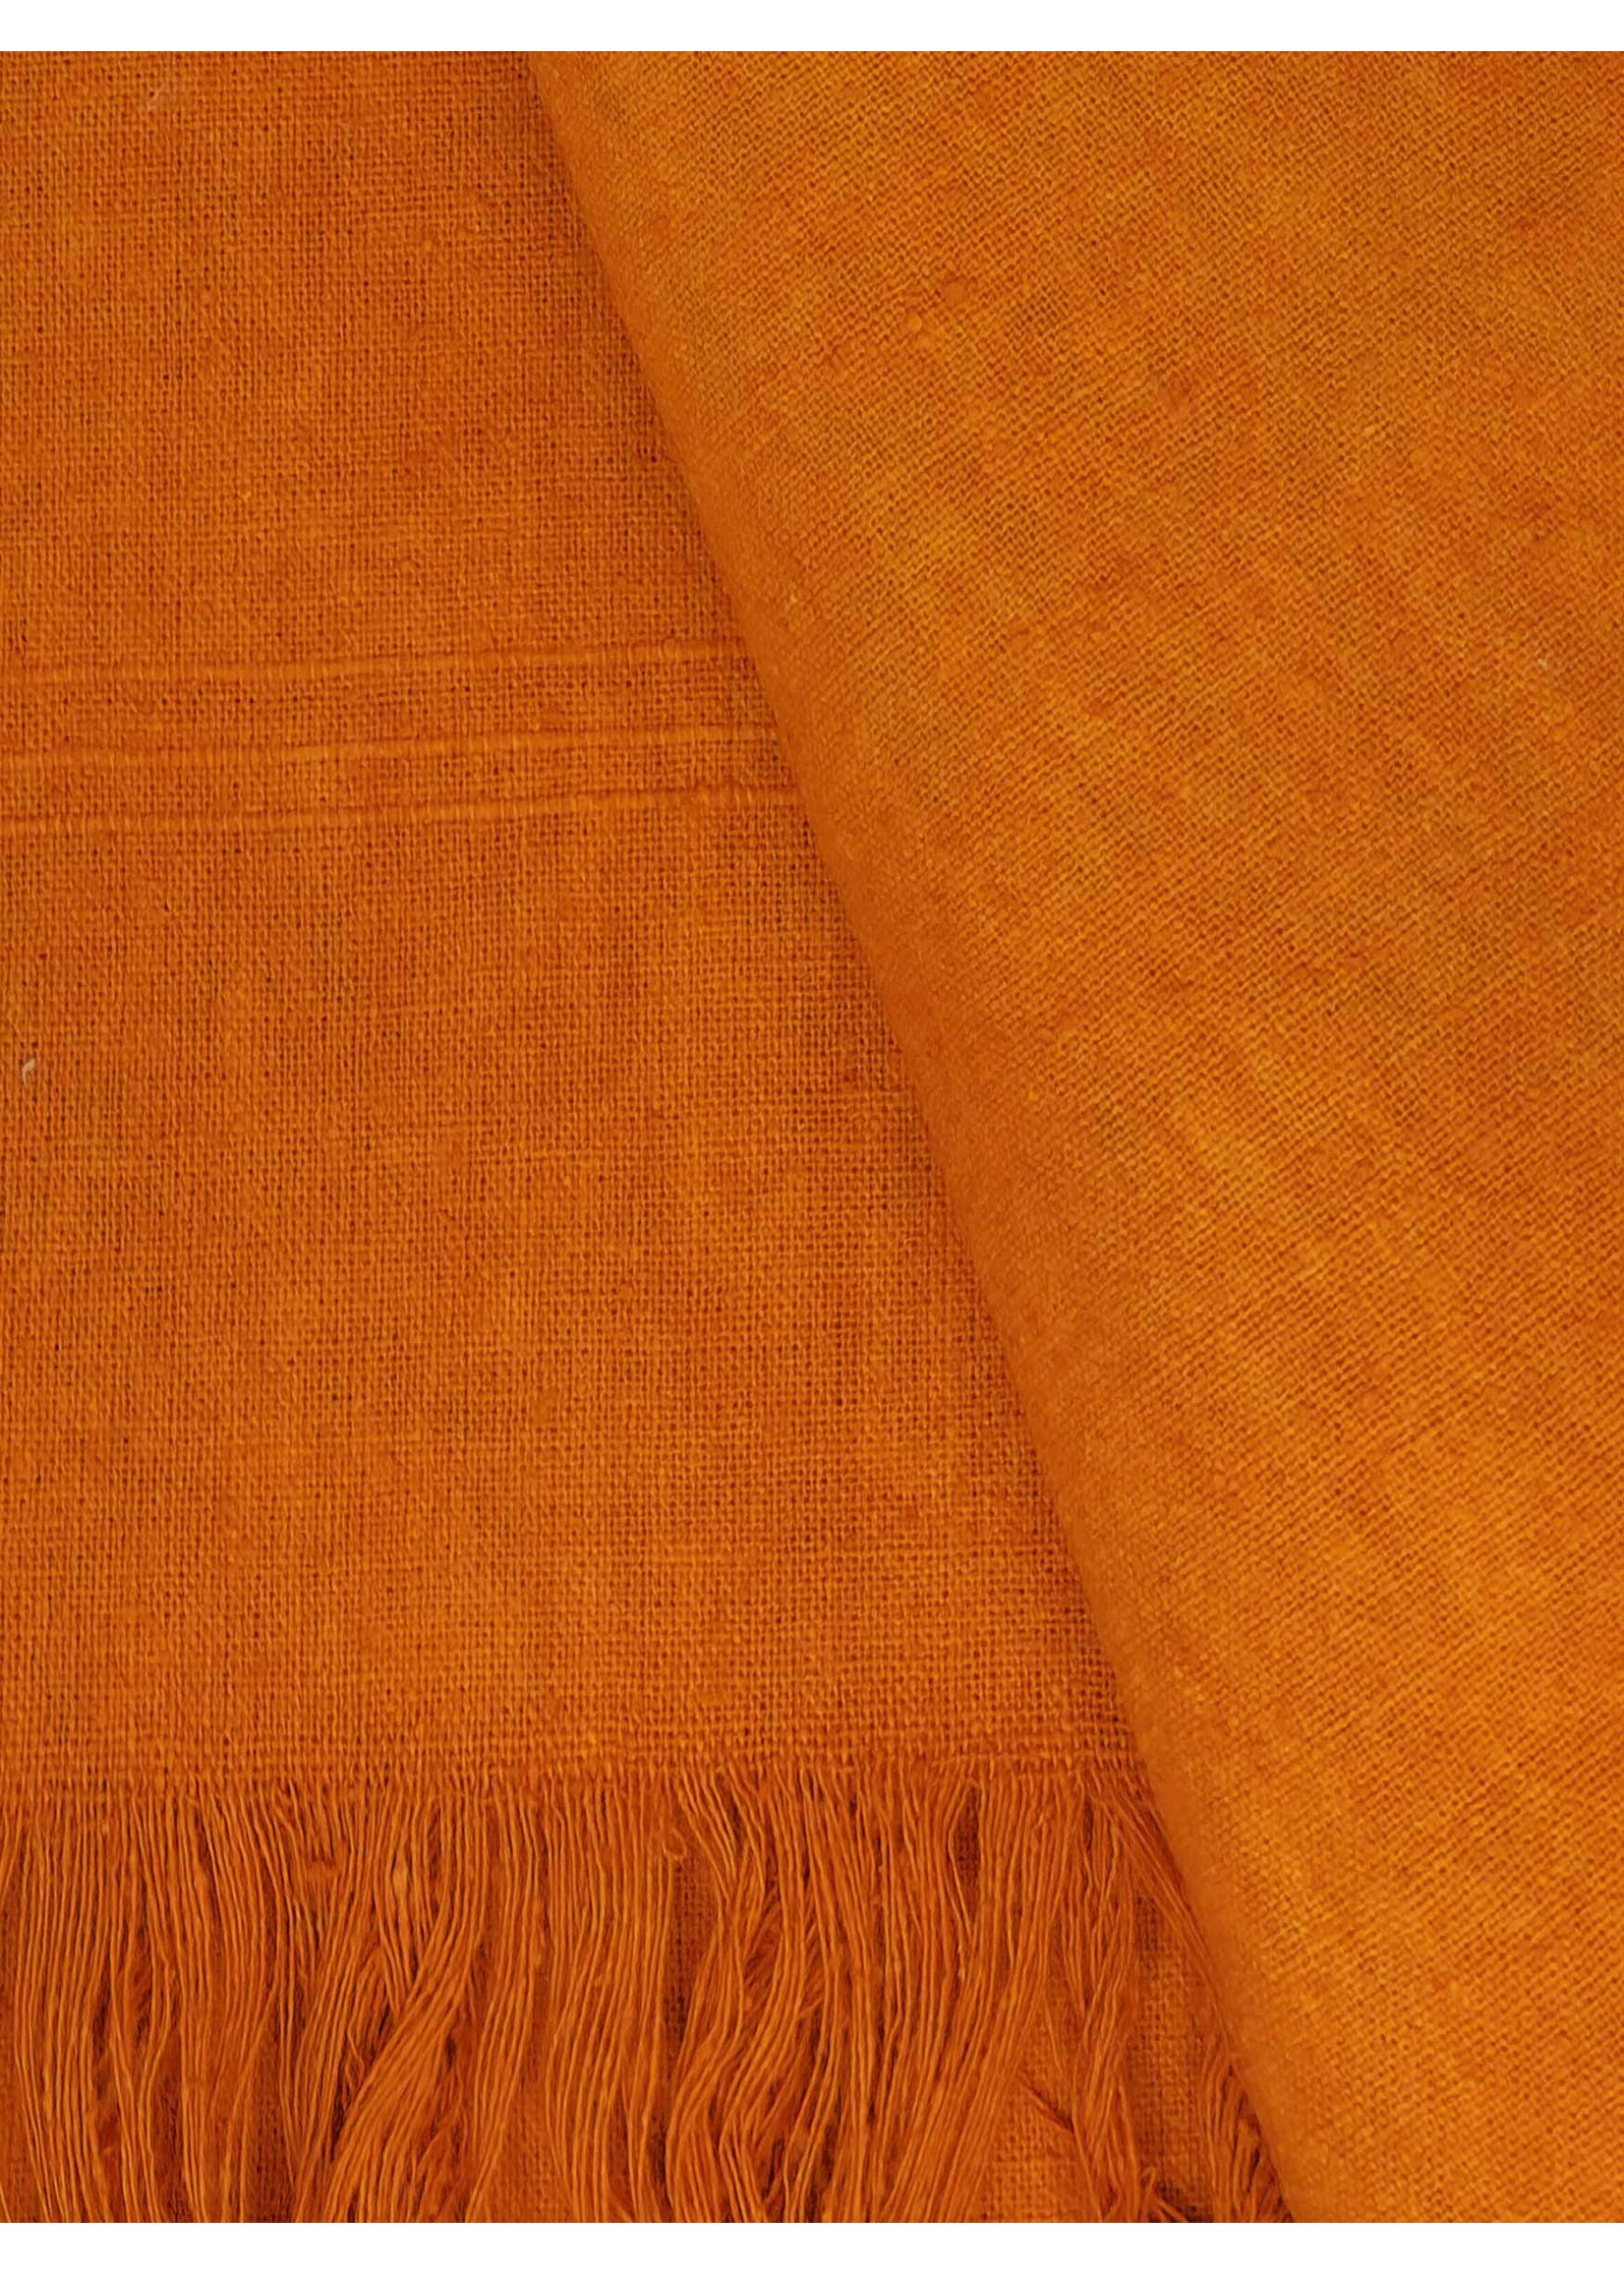 Châle tibétain en soie brute, 250 x 120 cm